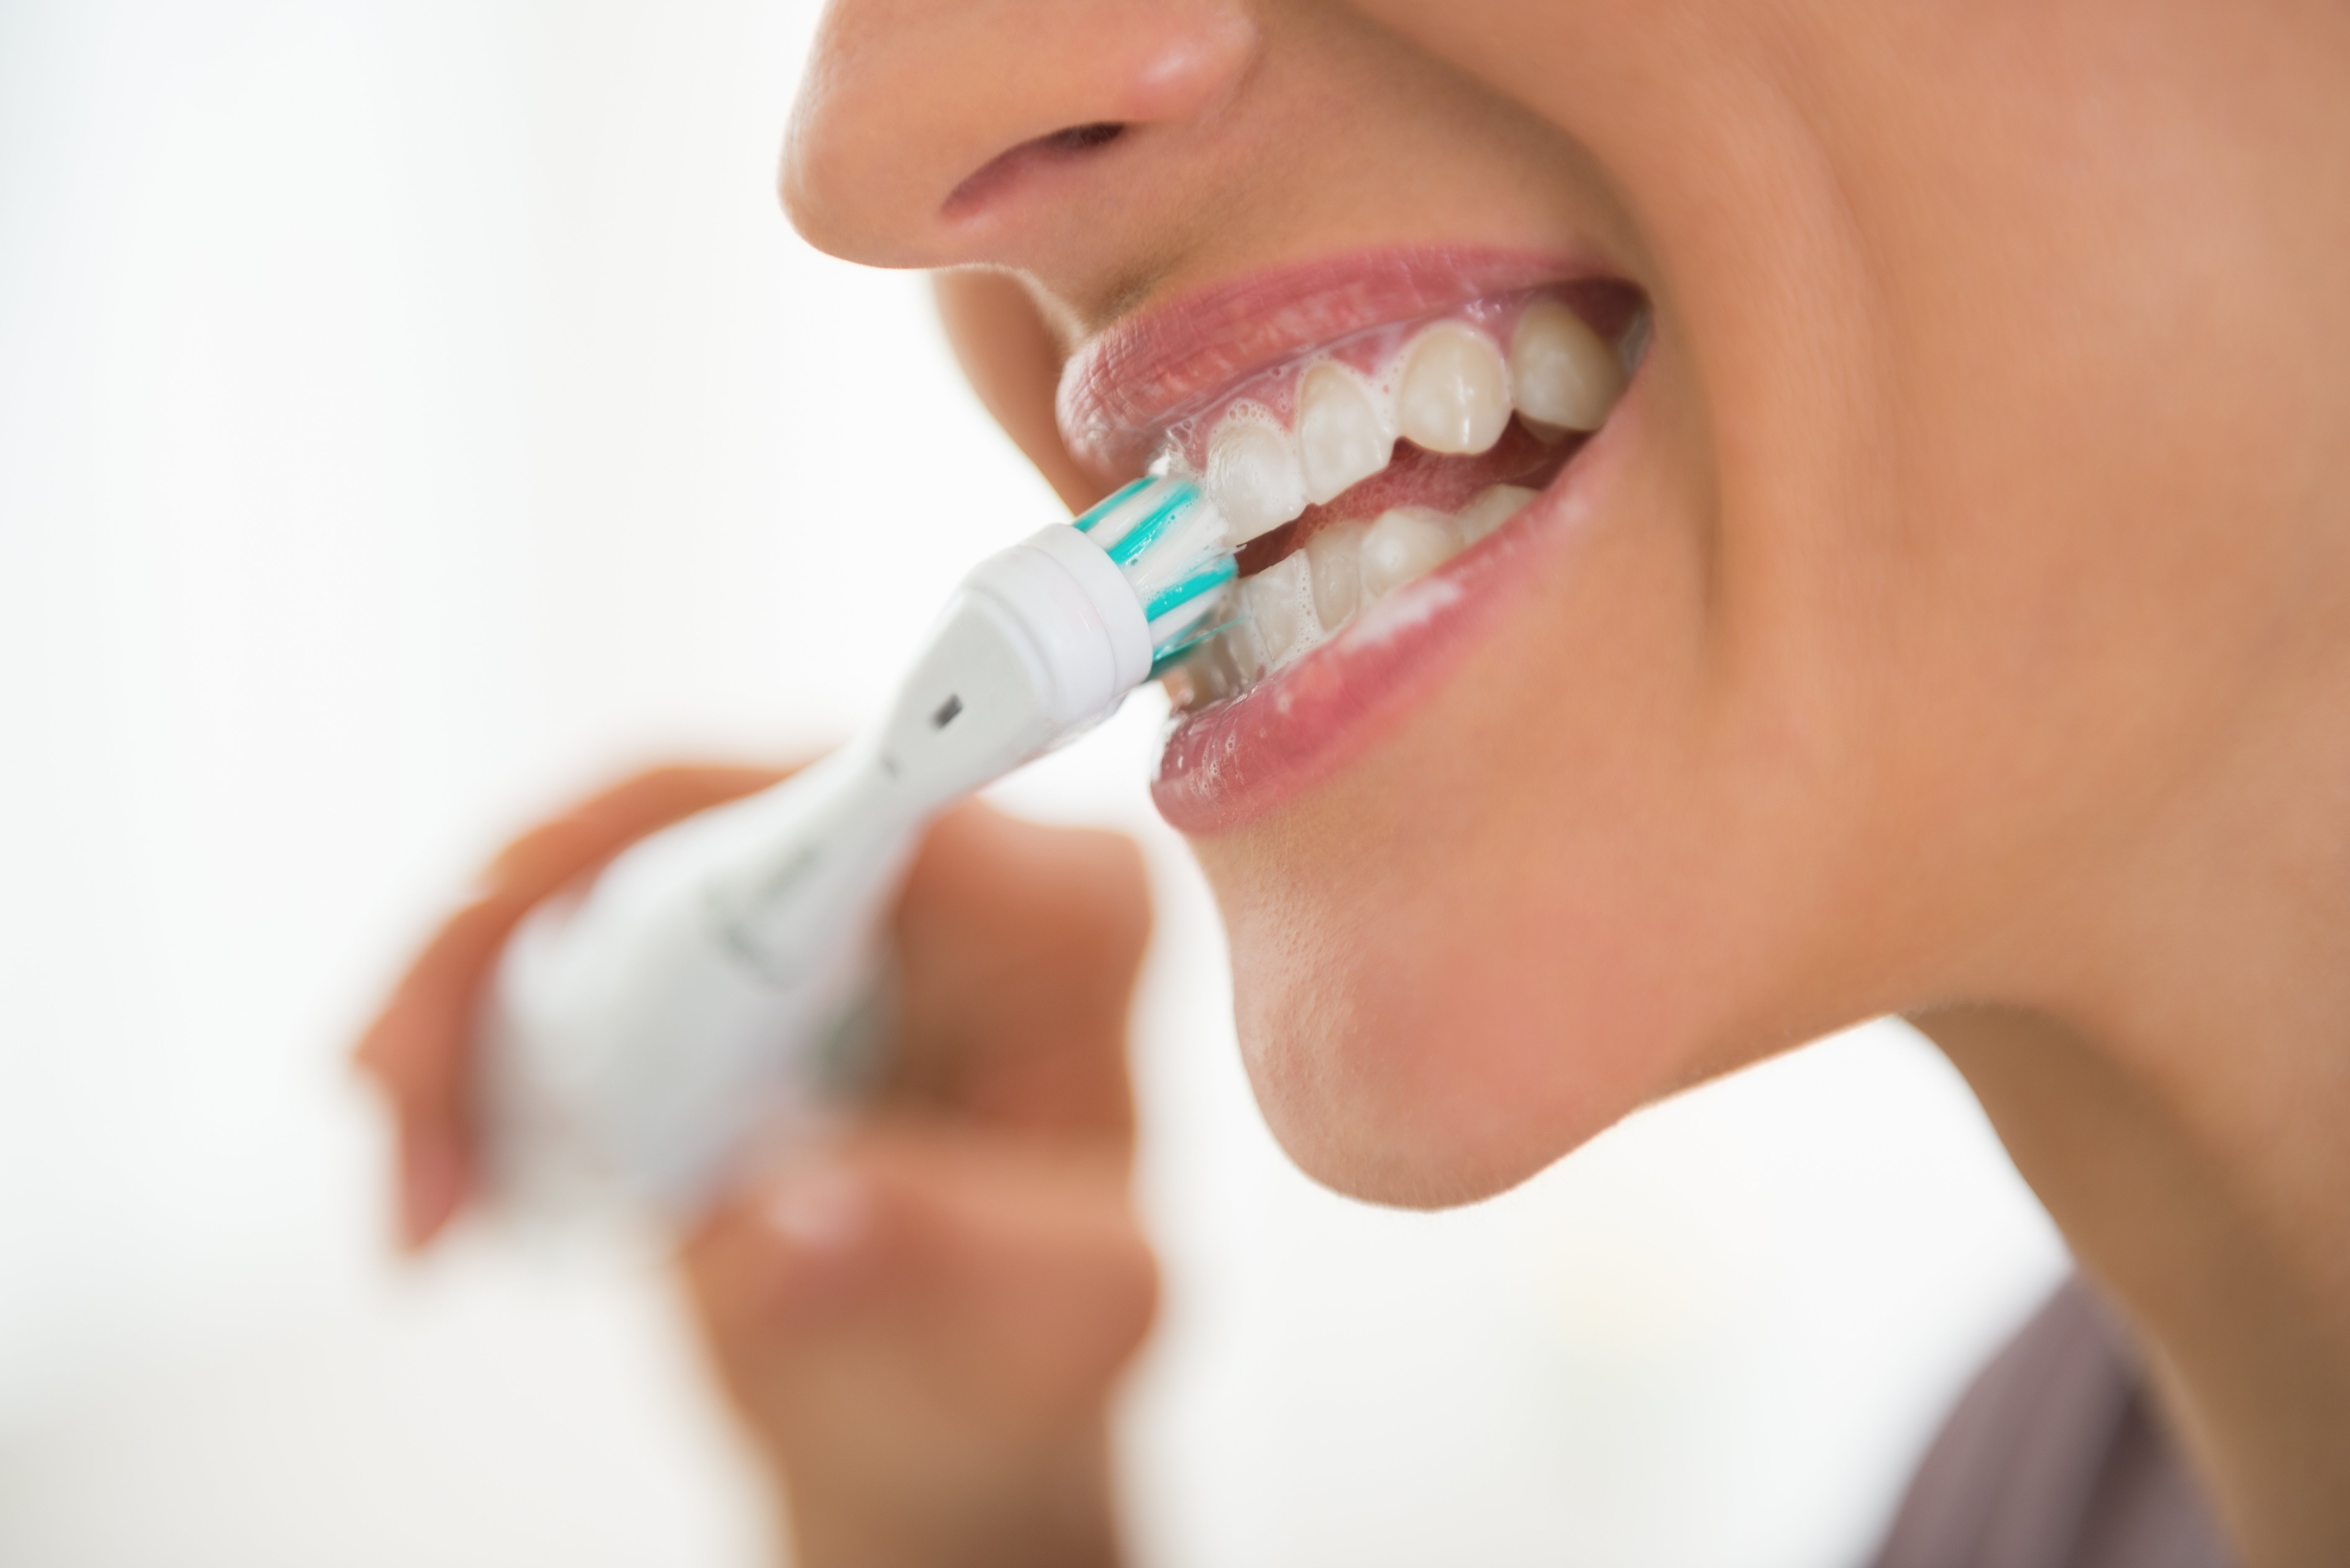 Brushing teeth toothbrush oral health dentist